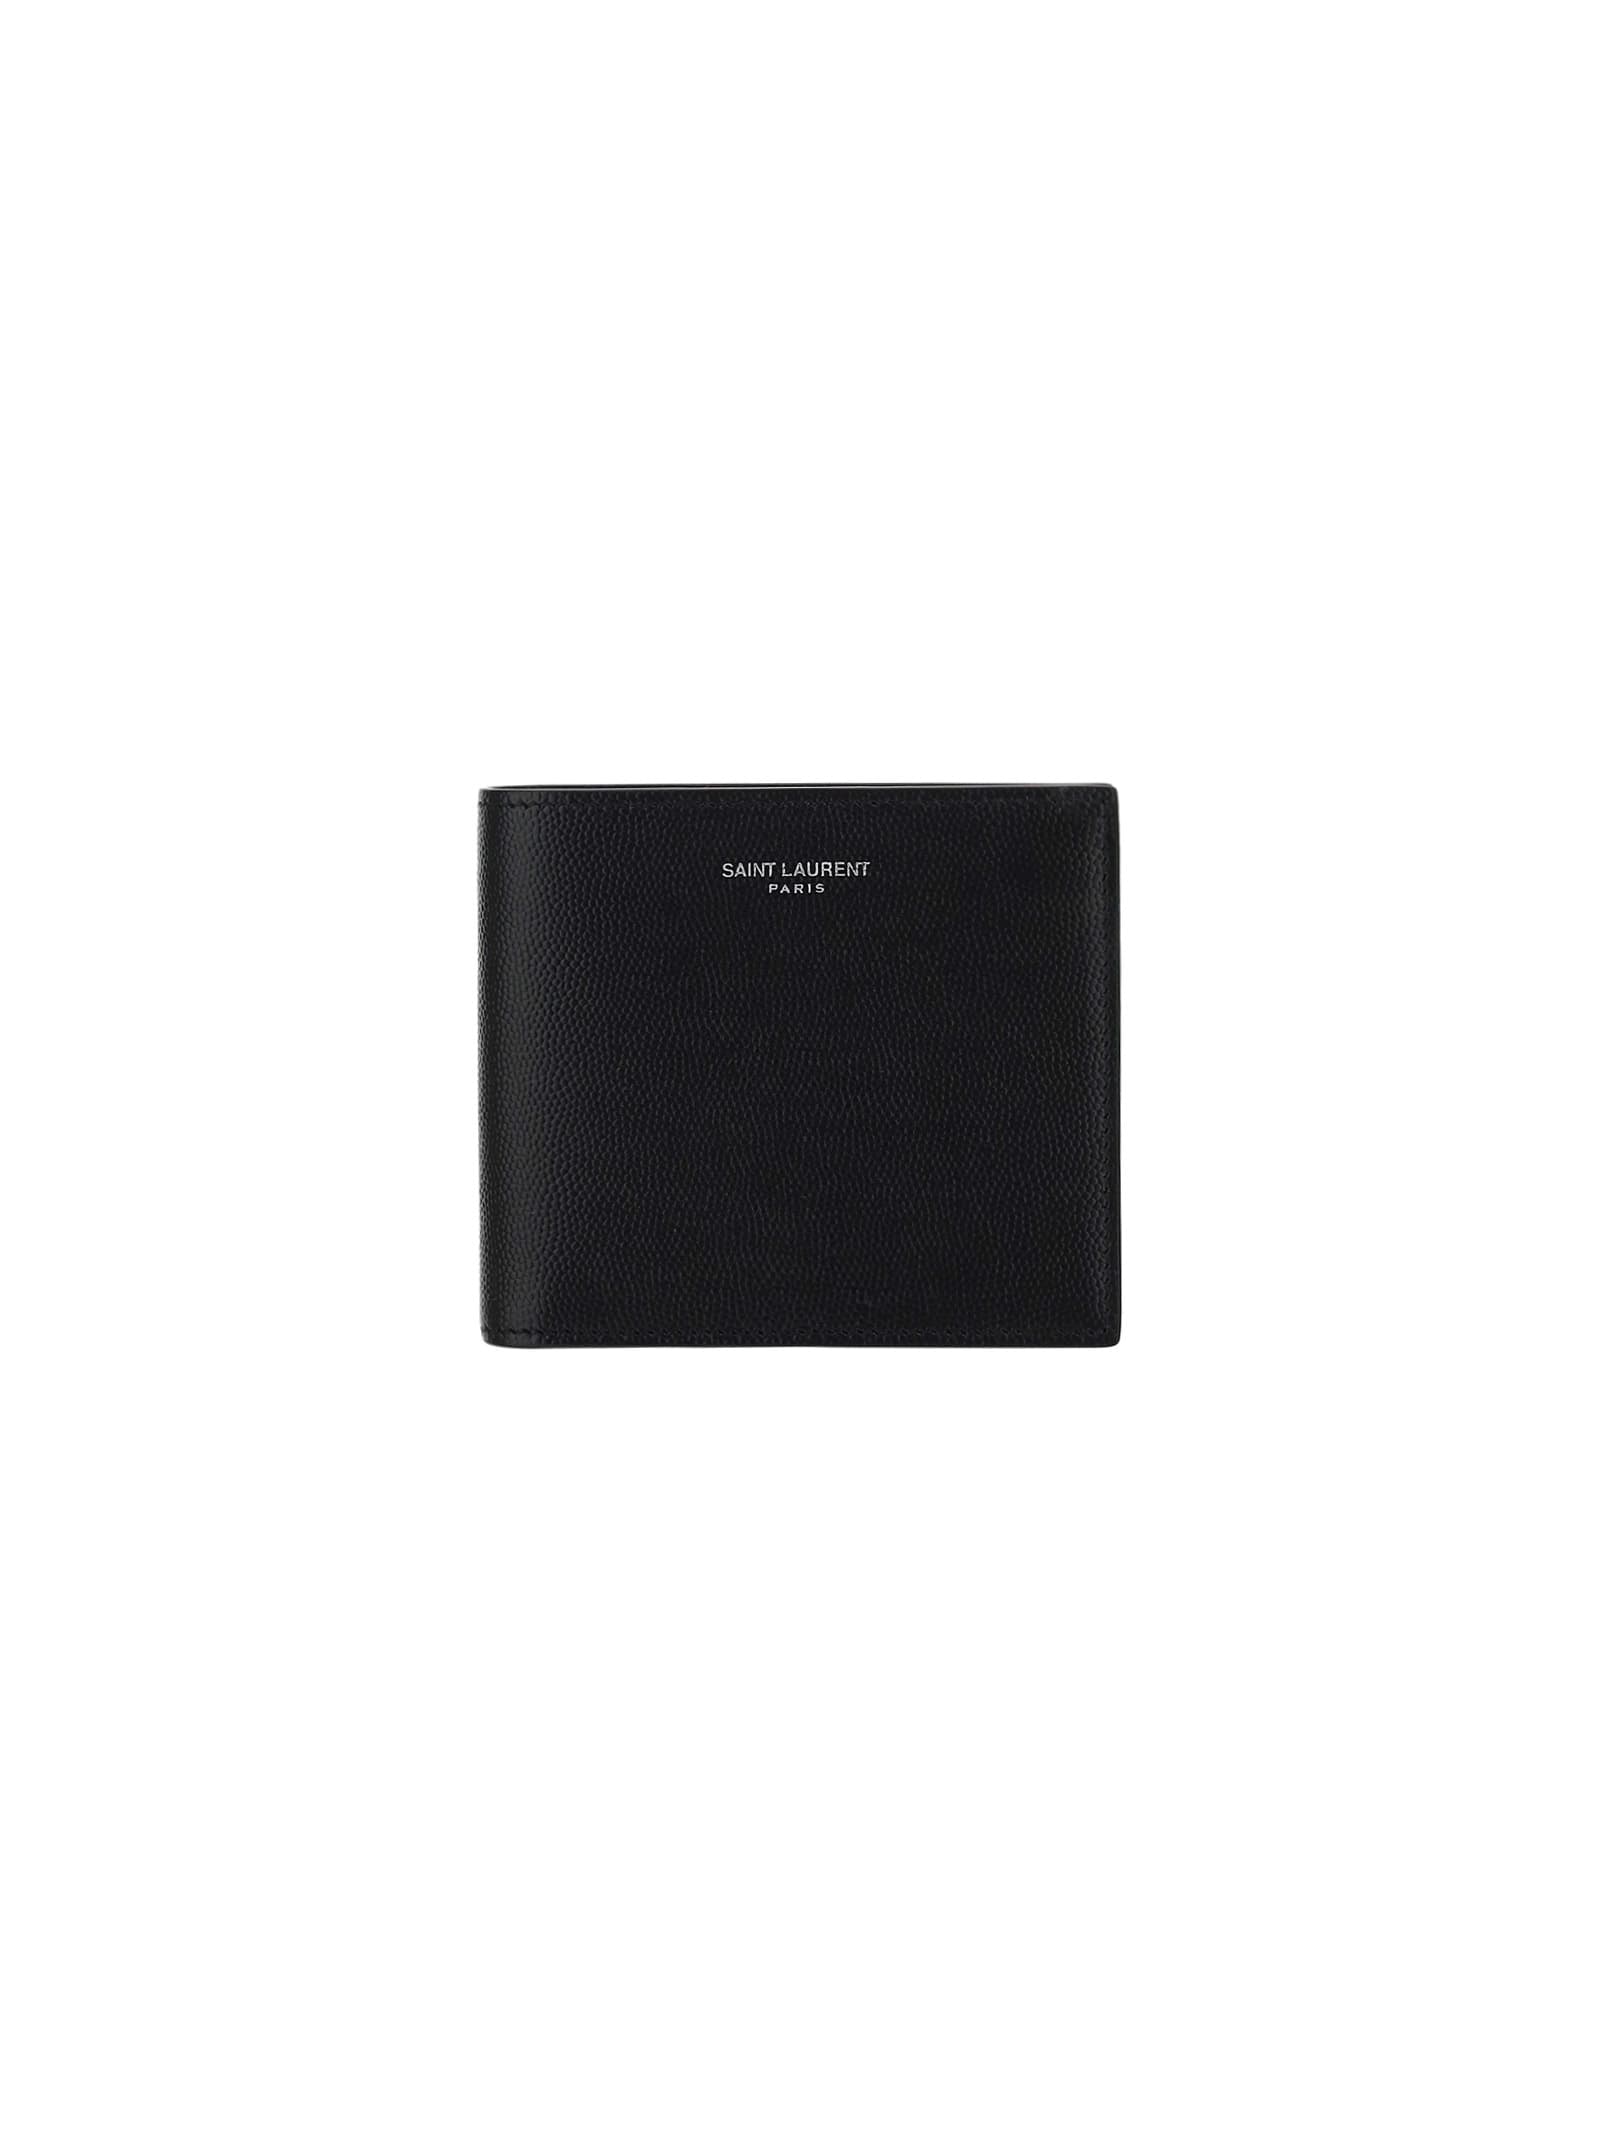 Saint Laurent Wallet In Black